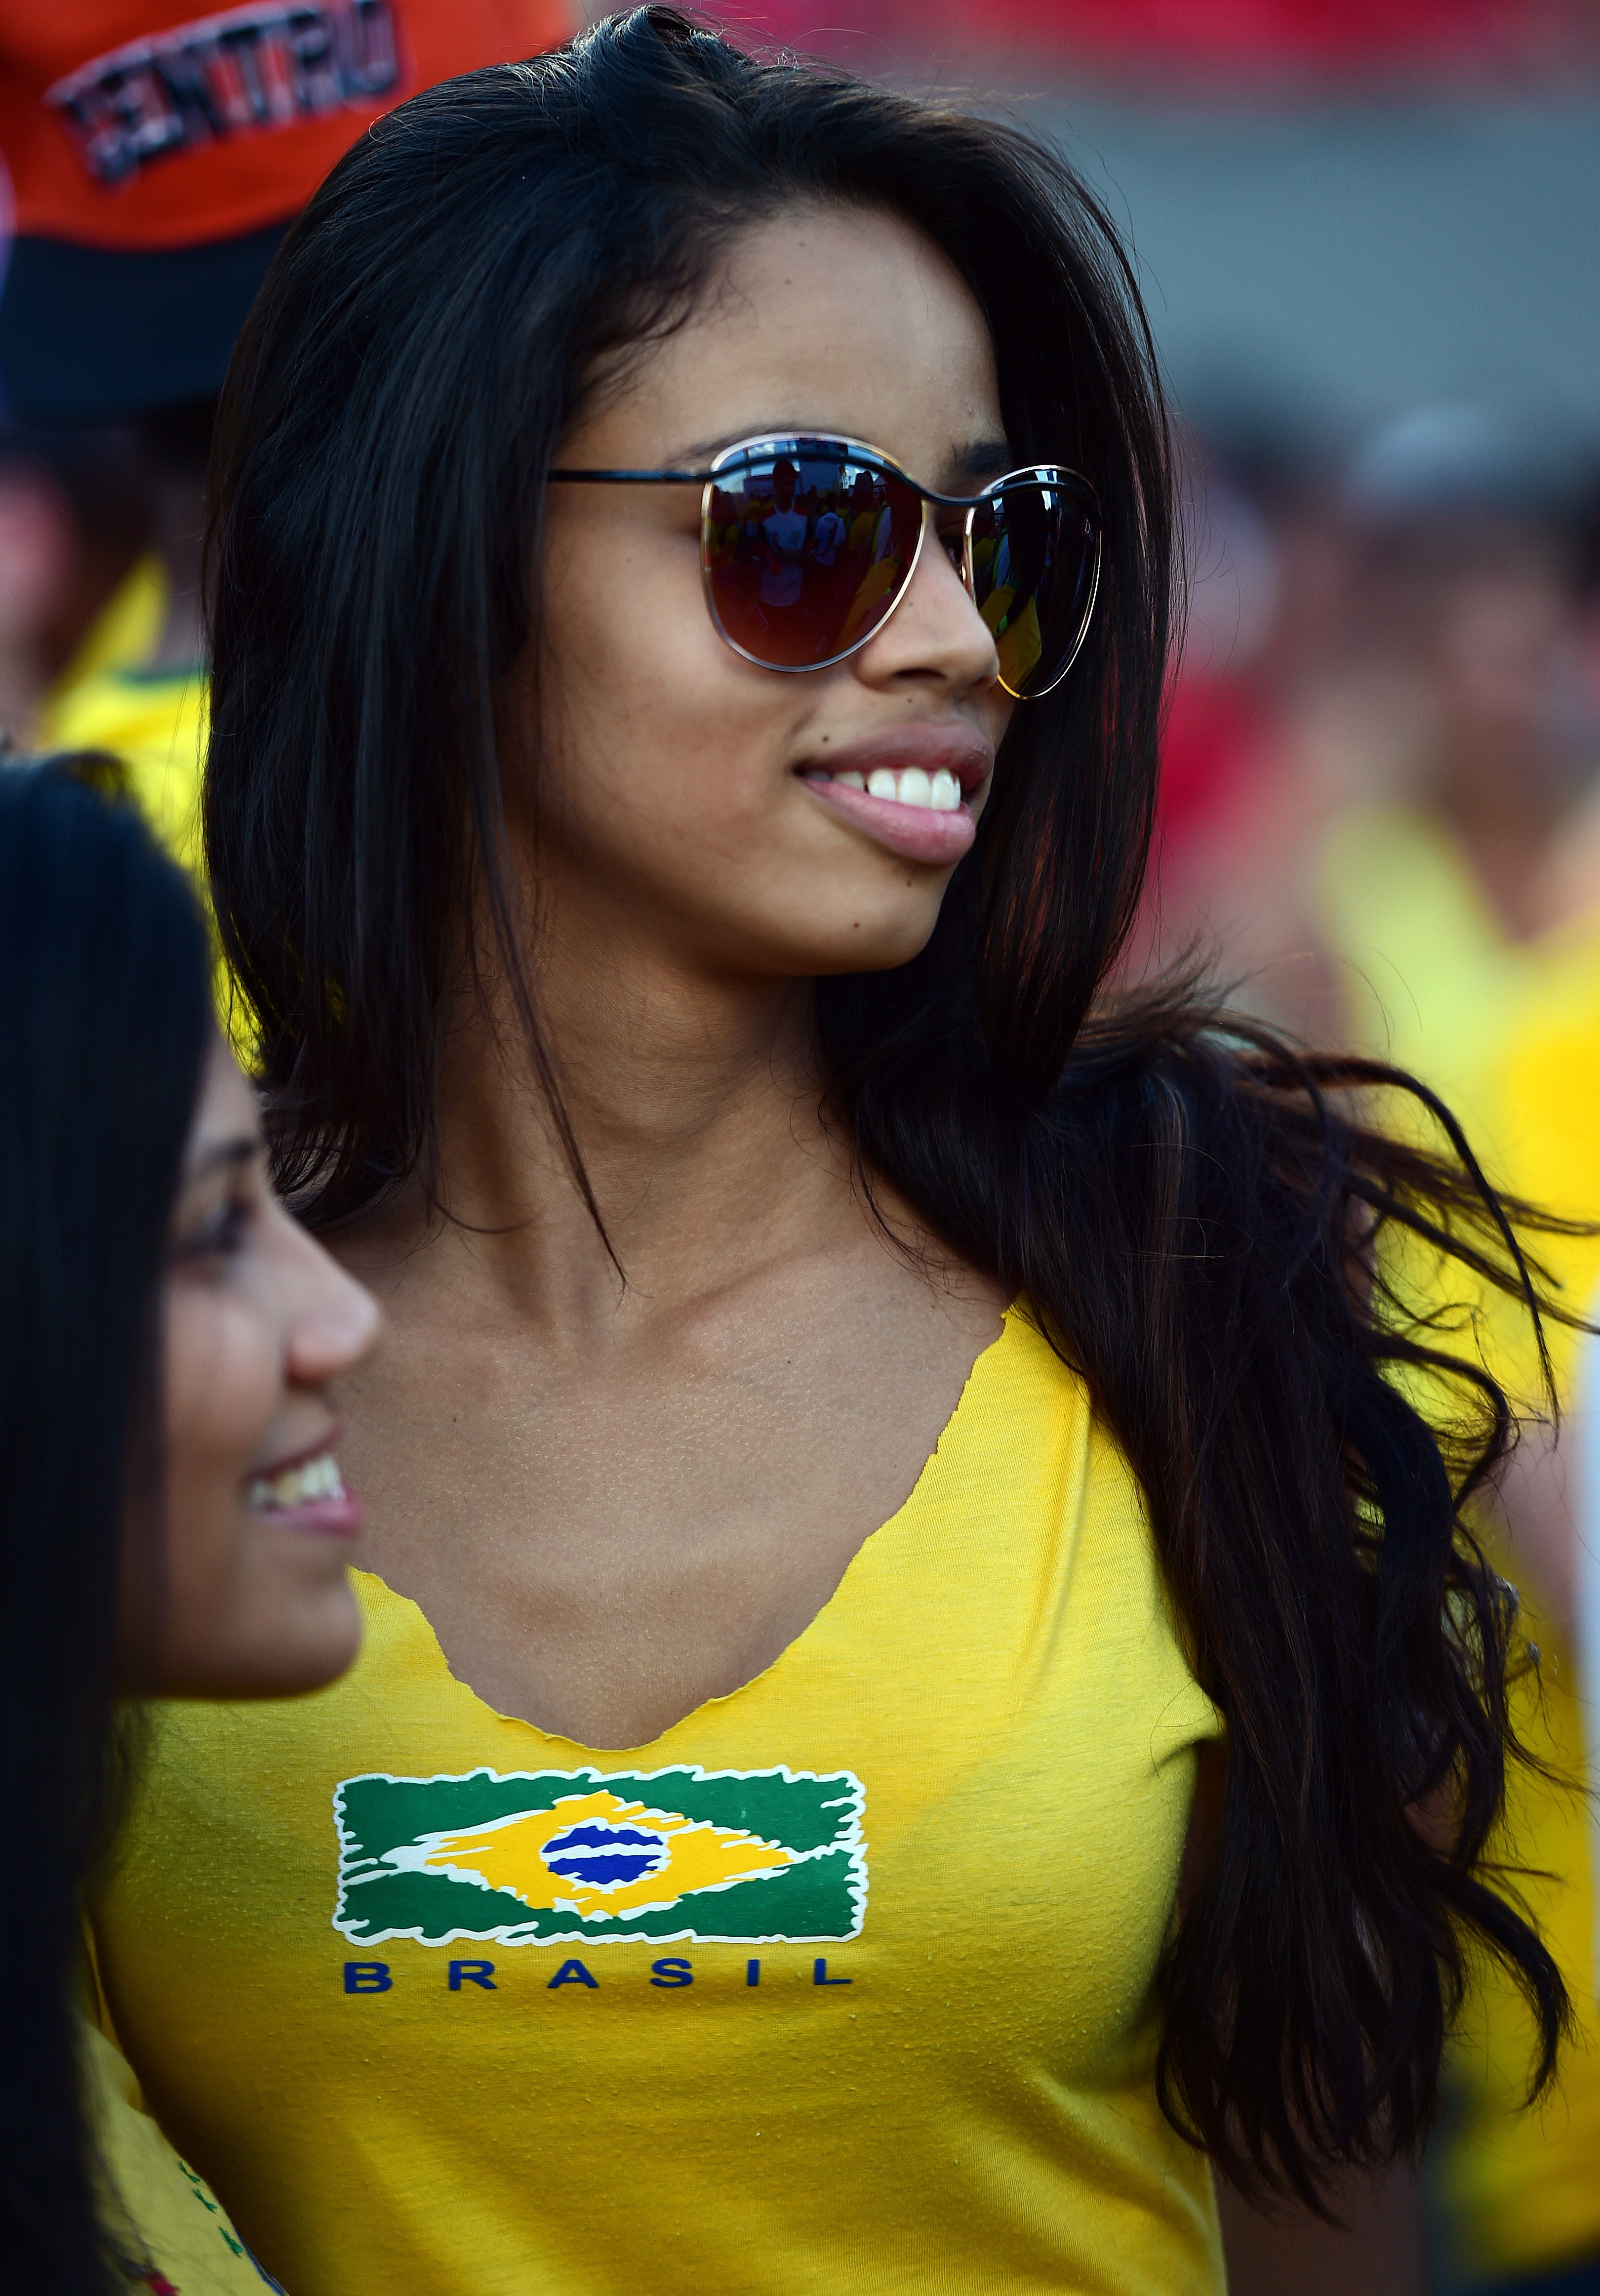 Бразильская девушка 